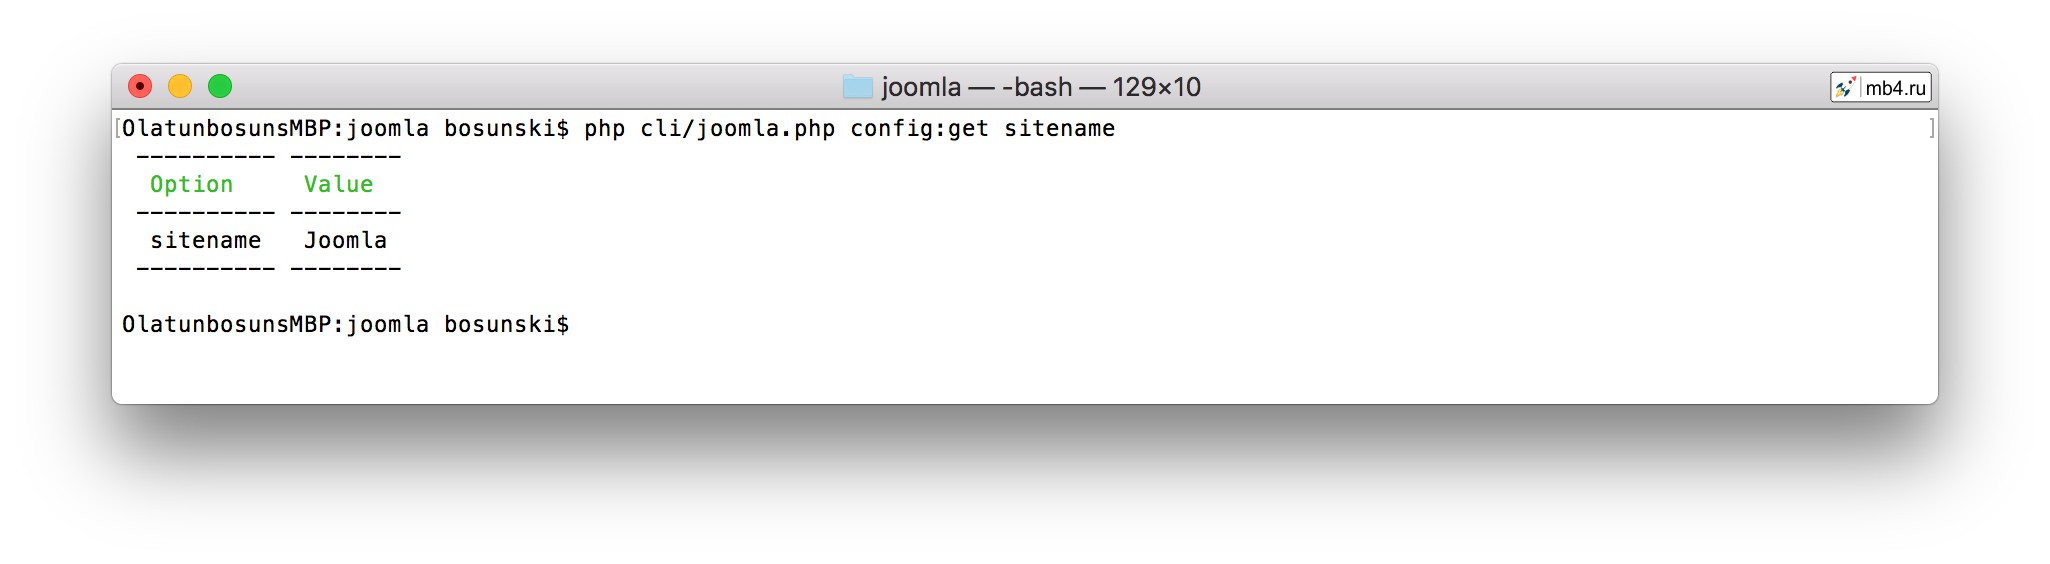 команда config:get, как следует из названия, она получает значение параметра, существующего внутри configuration.php